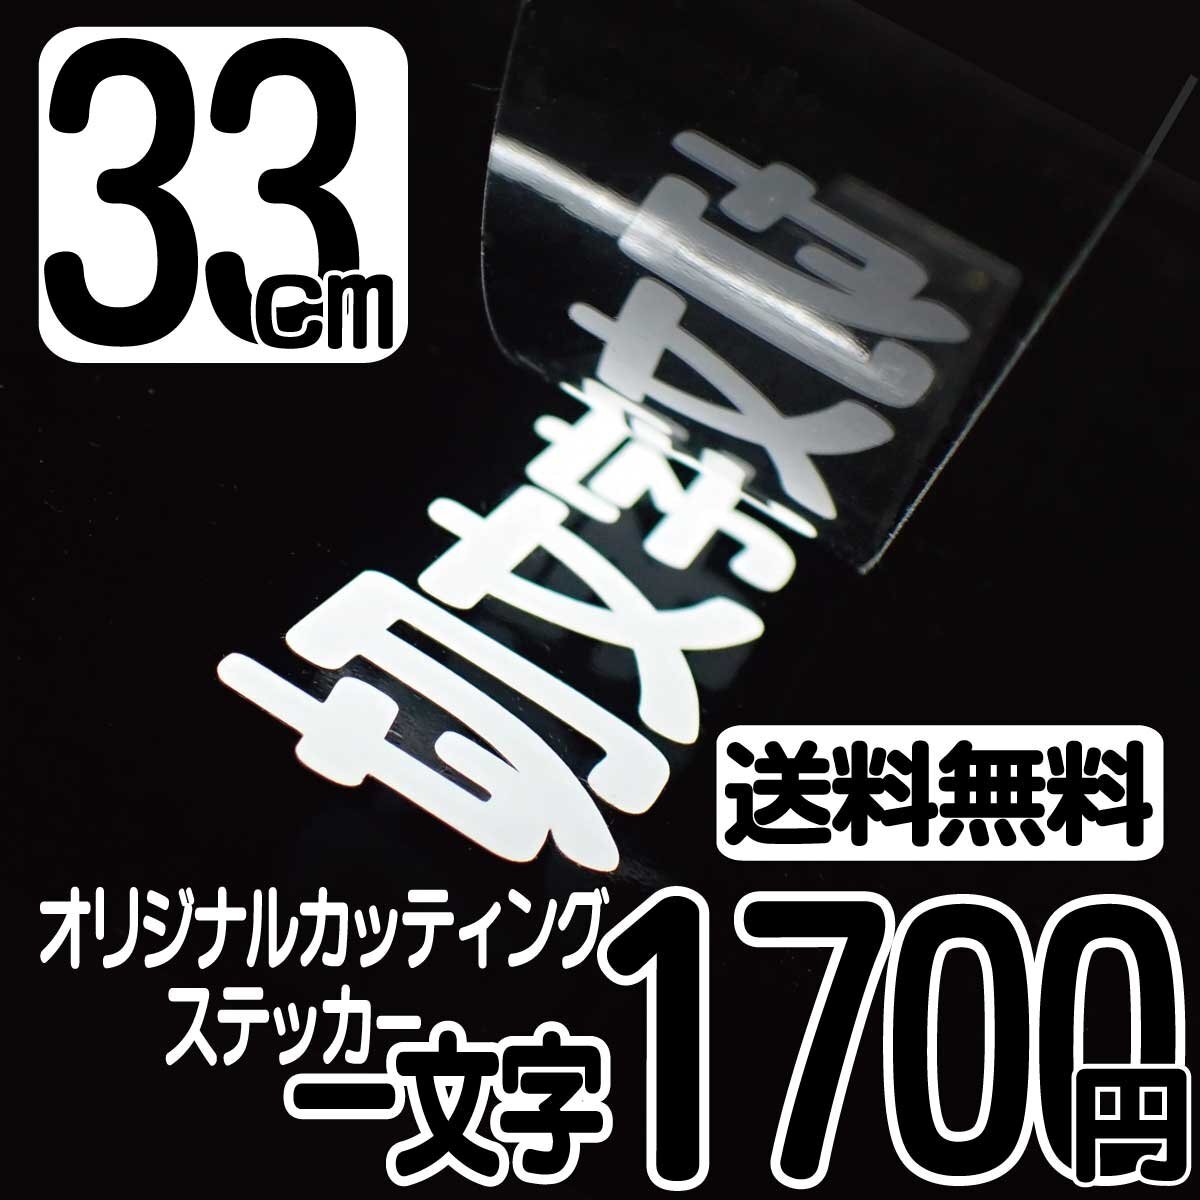 Высота символа наклейка на стикеру 33 см на символ 1700 иен